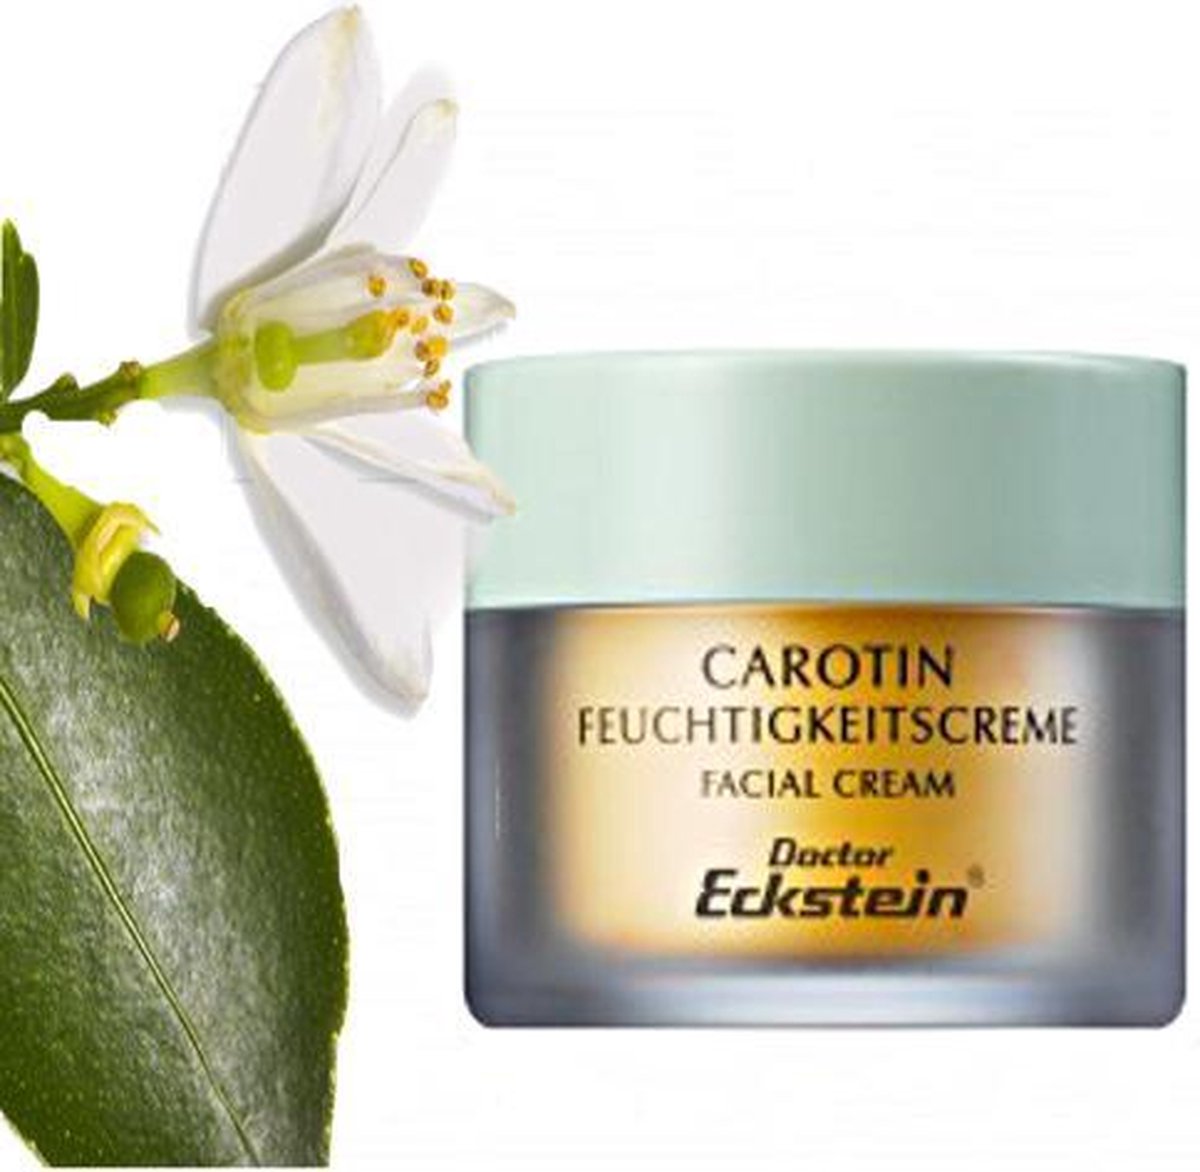 Dr Eckstein - Carotin Feuchtigkeitscrème 50 ml